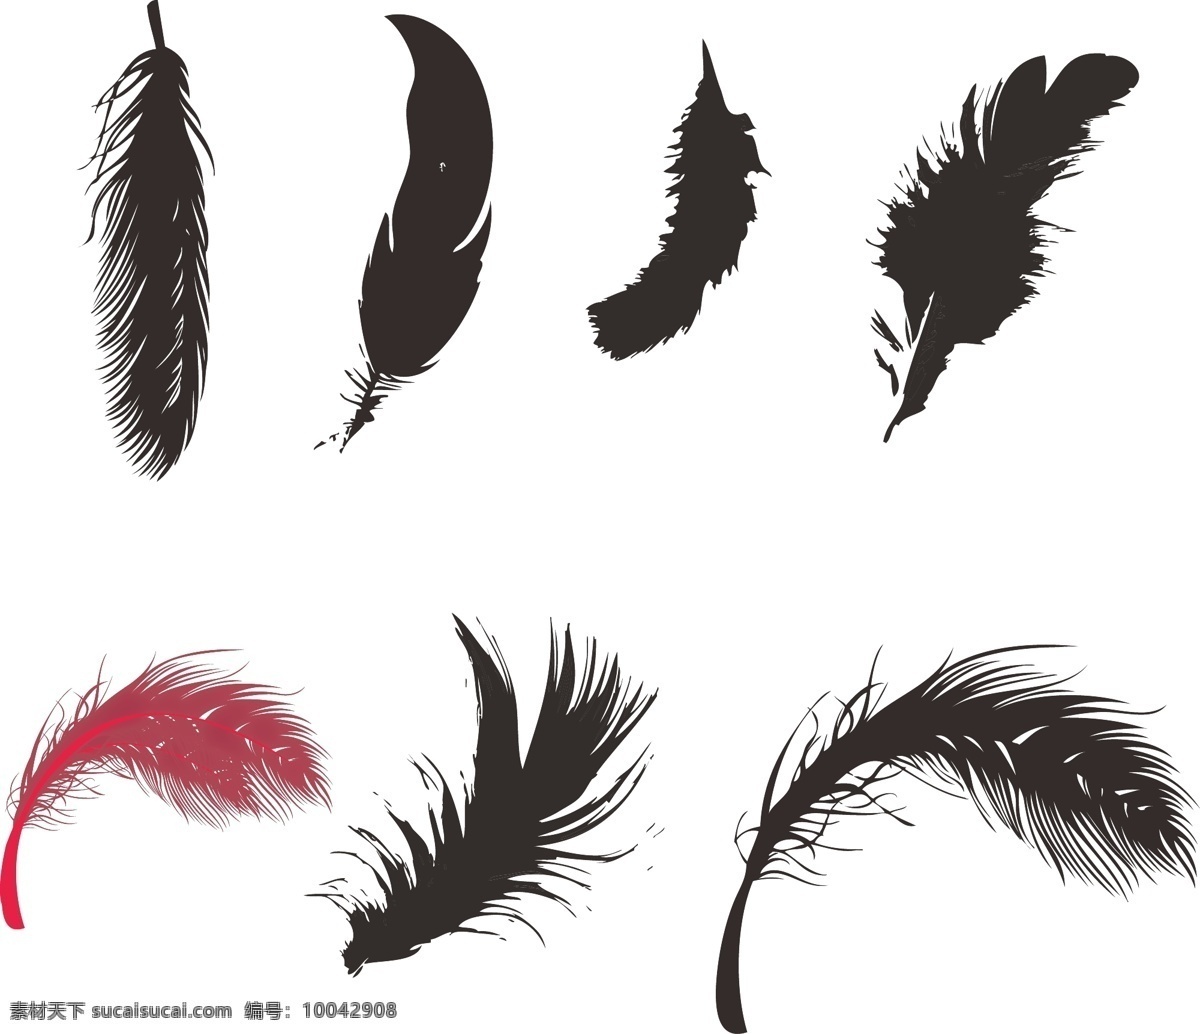 鸟类羽毛 羽毛素材 线描羽毛 矢量 手绘羽毛 矢量手绘 底纹边框 花边花纹